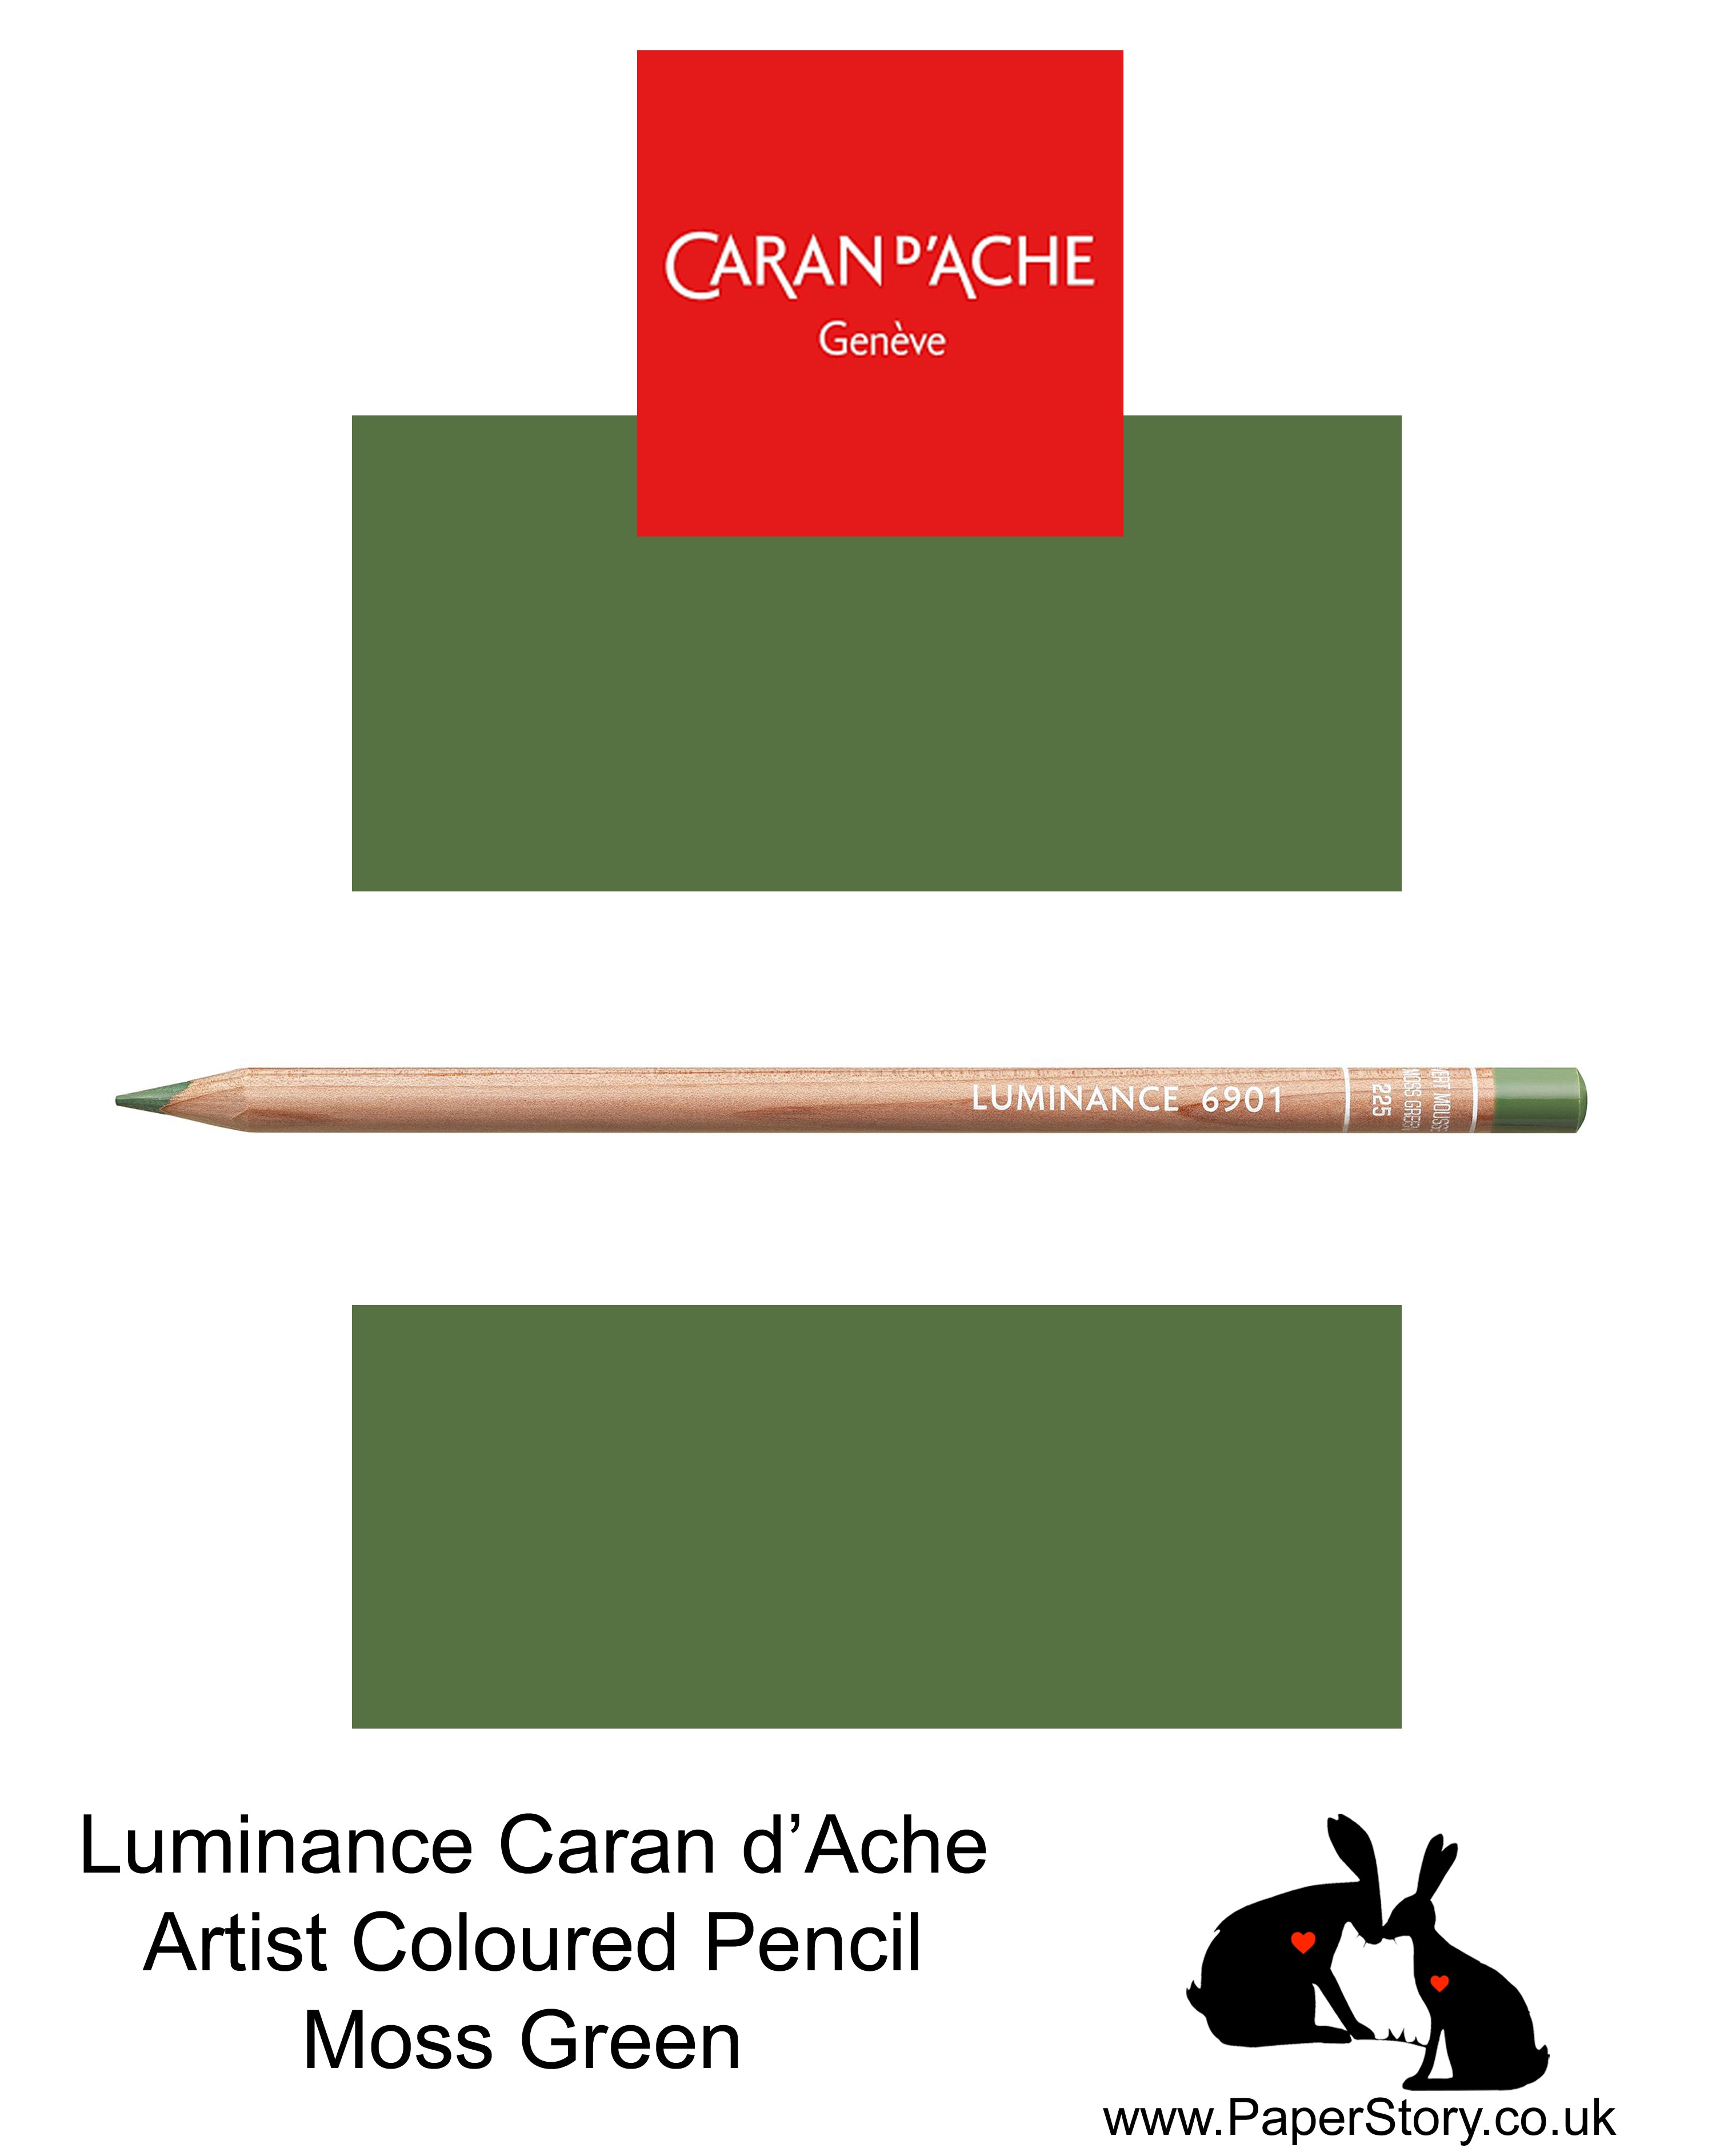 Caran d'Ache Luminance individual Artist Colour Pencils 6901 Moss Green 225